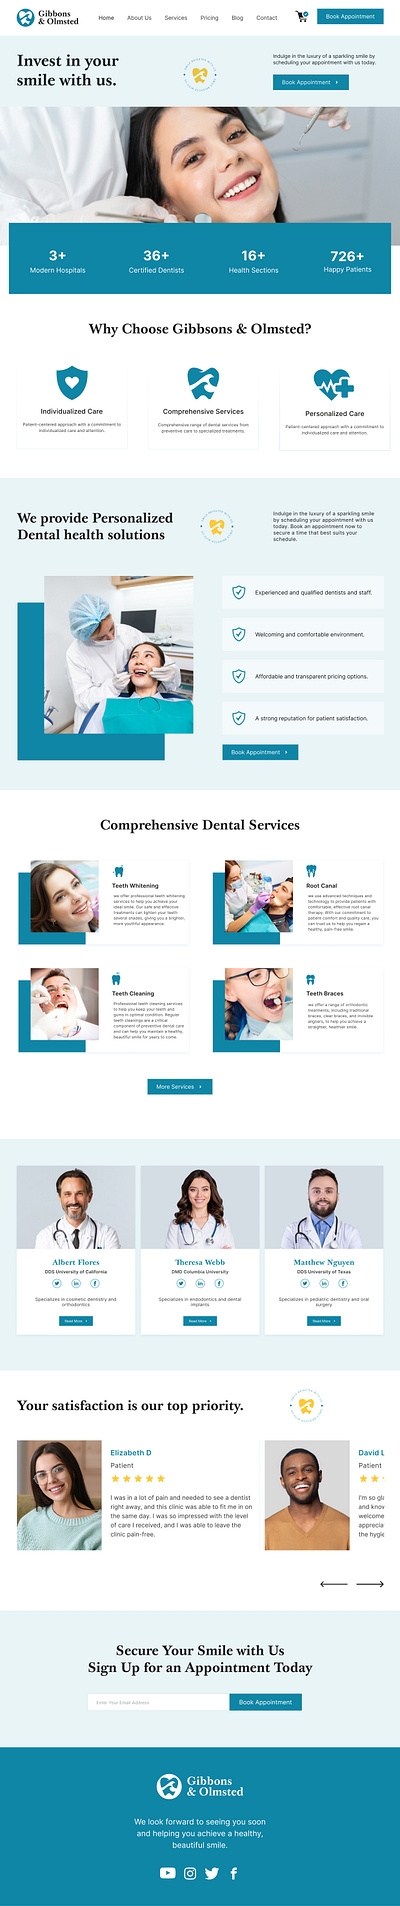 Gibbons & Olmsted Dental Web Design adobe illustrartor dental website design graphic design landing page medical website ui ui design ui ux design web design website design